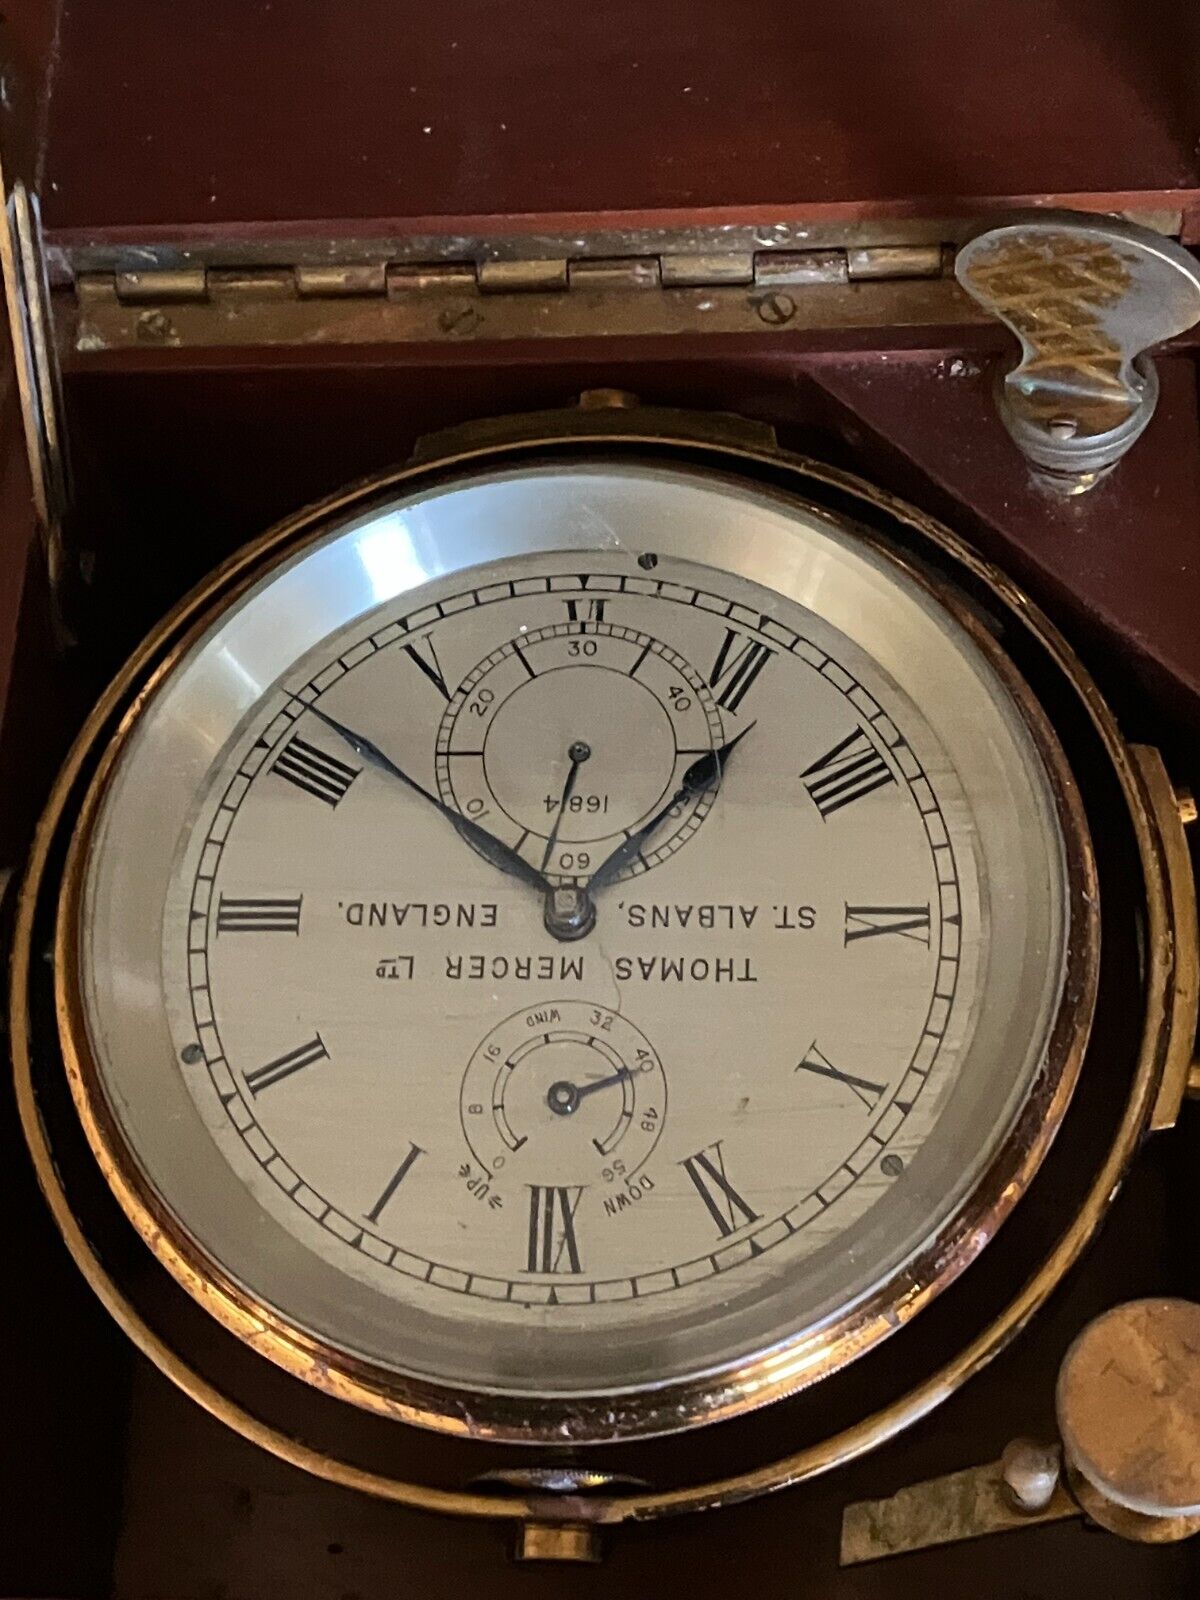 Antique gimbaled SHIPS CHRONOMETER (Clock)Thomas Mercer Ltd England with Case